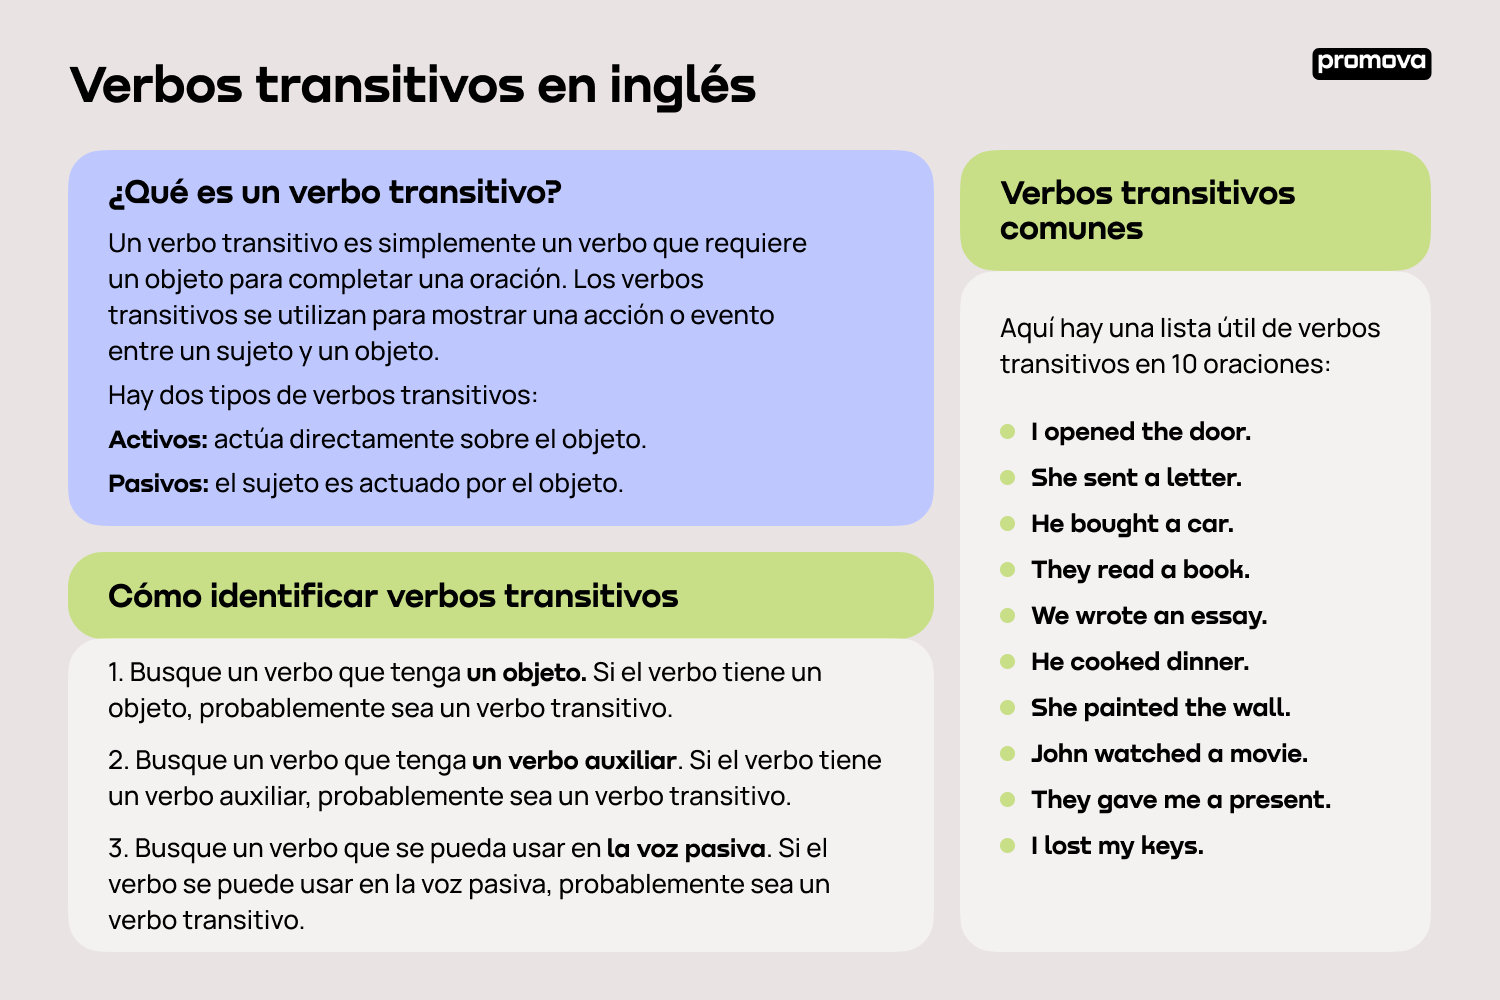 Aprende sobre los verbos transitivos en inglés: Usos y conjugaciones